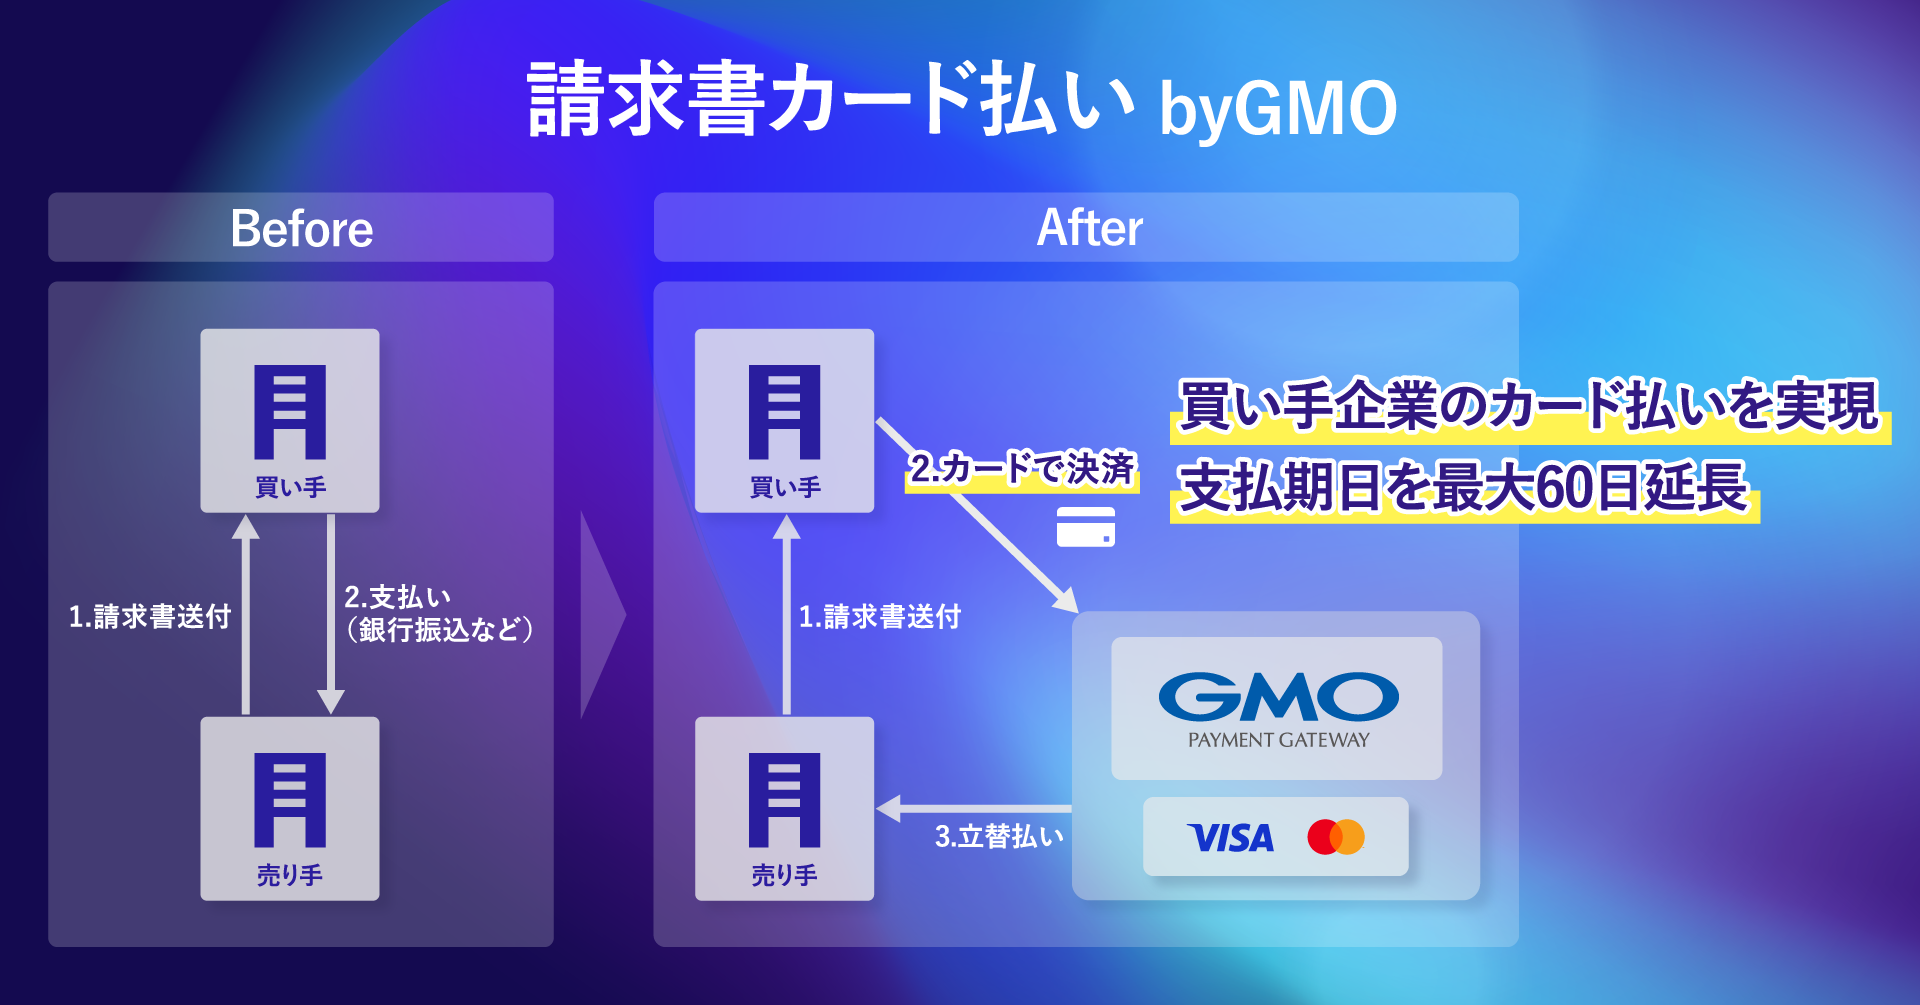 BtoB取引のカード払いを実現する「請求書カード払い byGMO」を提供